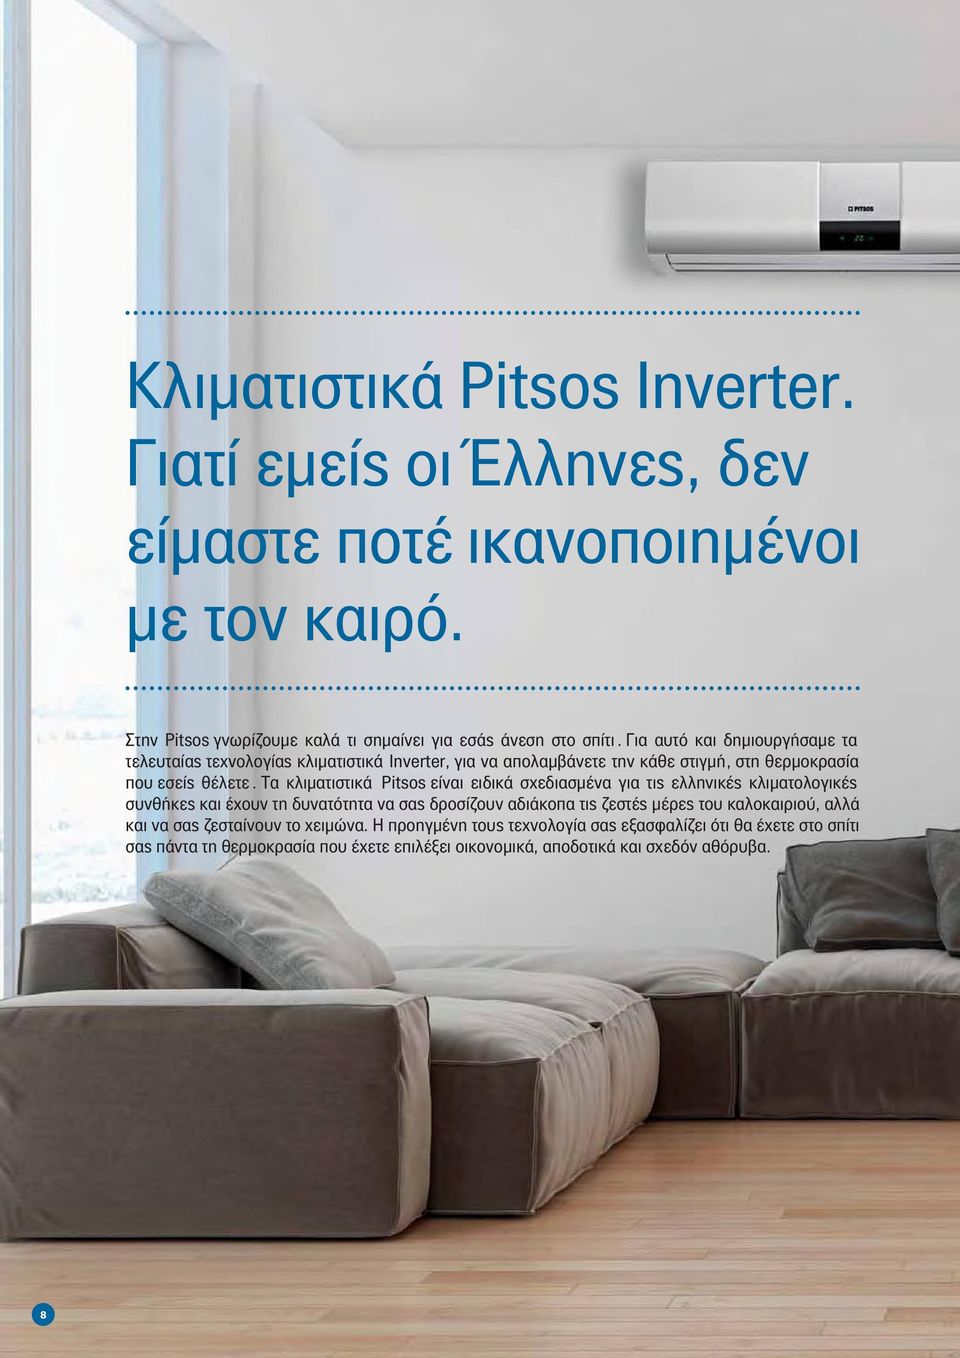 Τα κλιµατιστικά Pitsos είναι ειδικά σχεδιασµένα για τις ελληνικές κλιµατολογικές συνθήκες και έχουν τη δυνατότητα να σας δροσίζουν αδιάκοπα τις ζεστές µέρες του